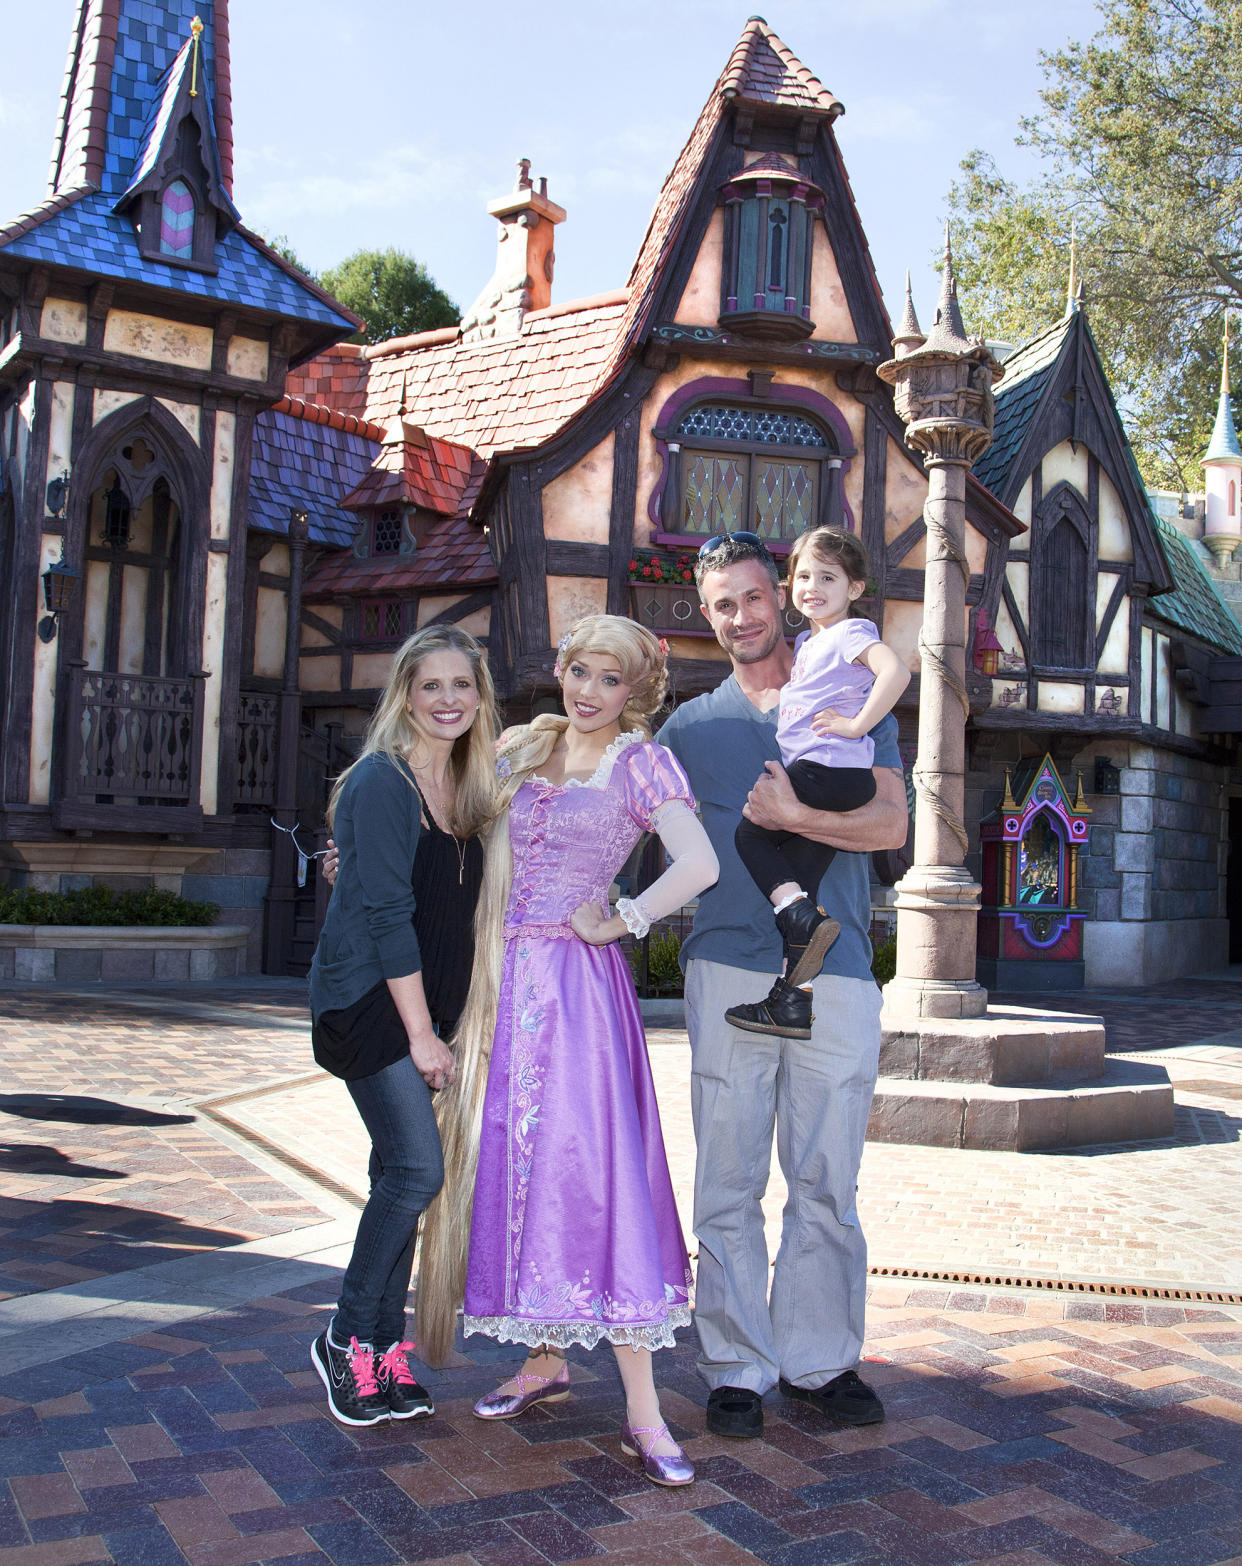 Sarah Michelle Gellar And Freddie Prinze Jr. Visit Disneyland (Paul Hiffmeyer / Disney Enterprises via Getty Images)